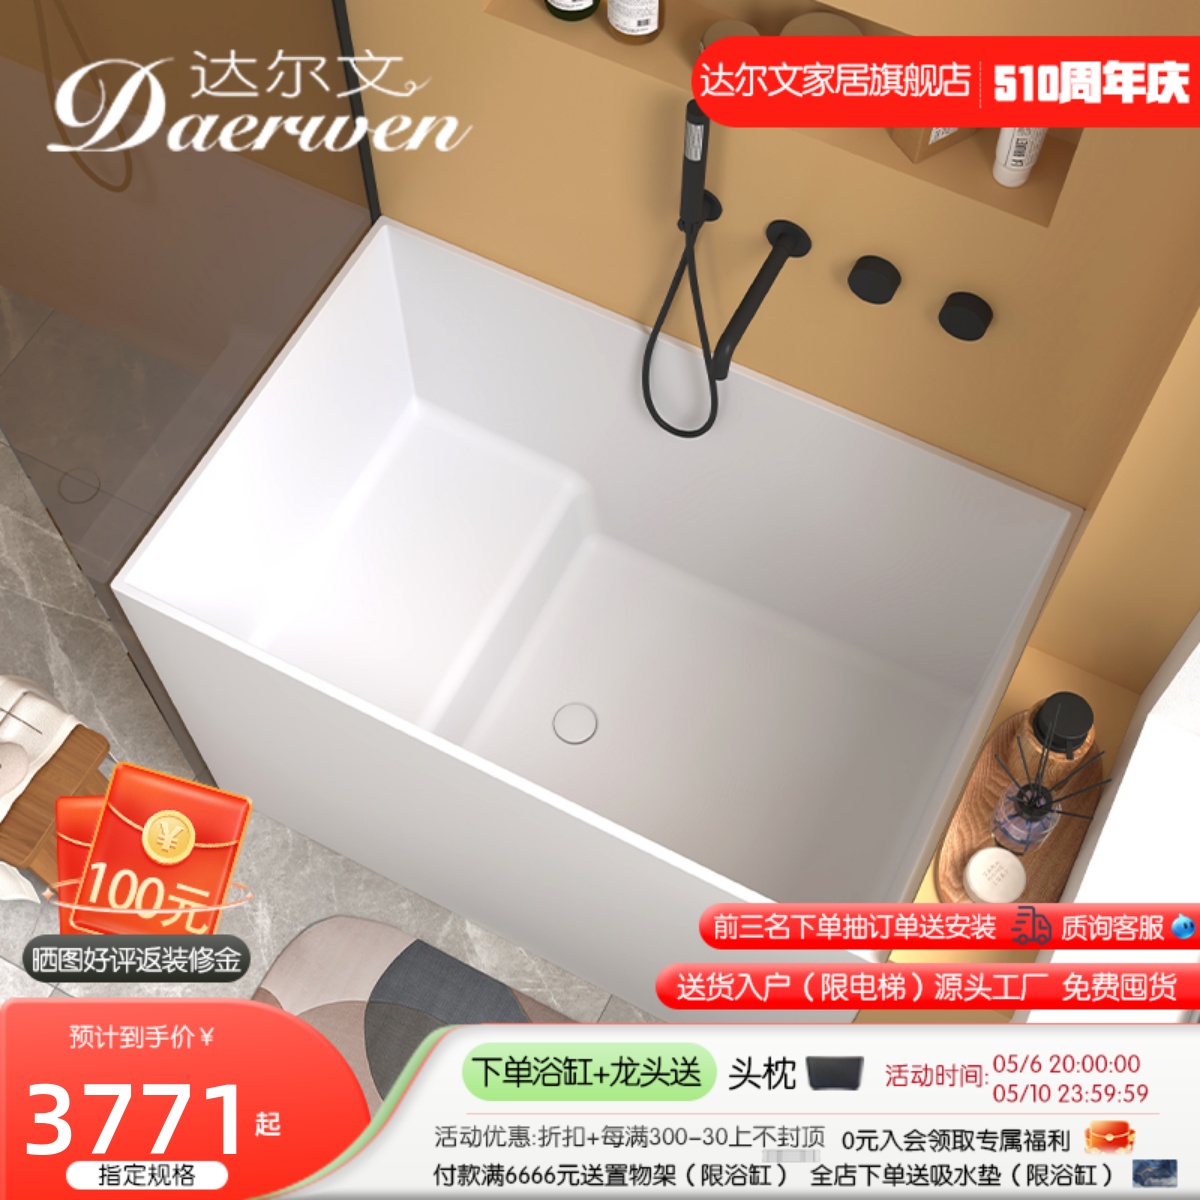 达尔文深泡式PMMA人造石浴缸小户型家用坐式独立款日式迷你小浴缸